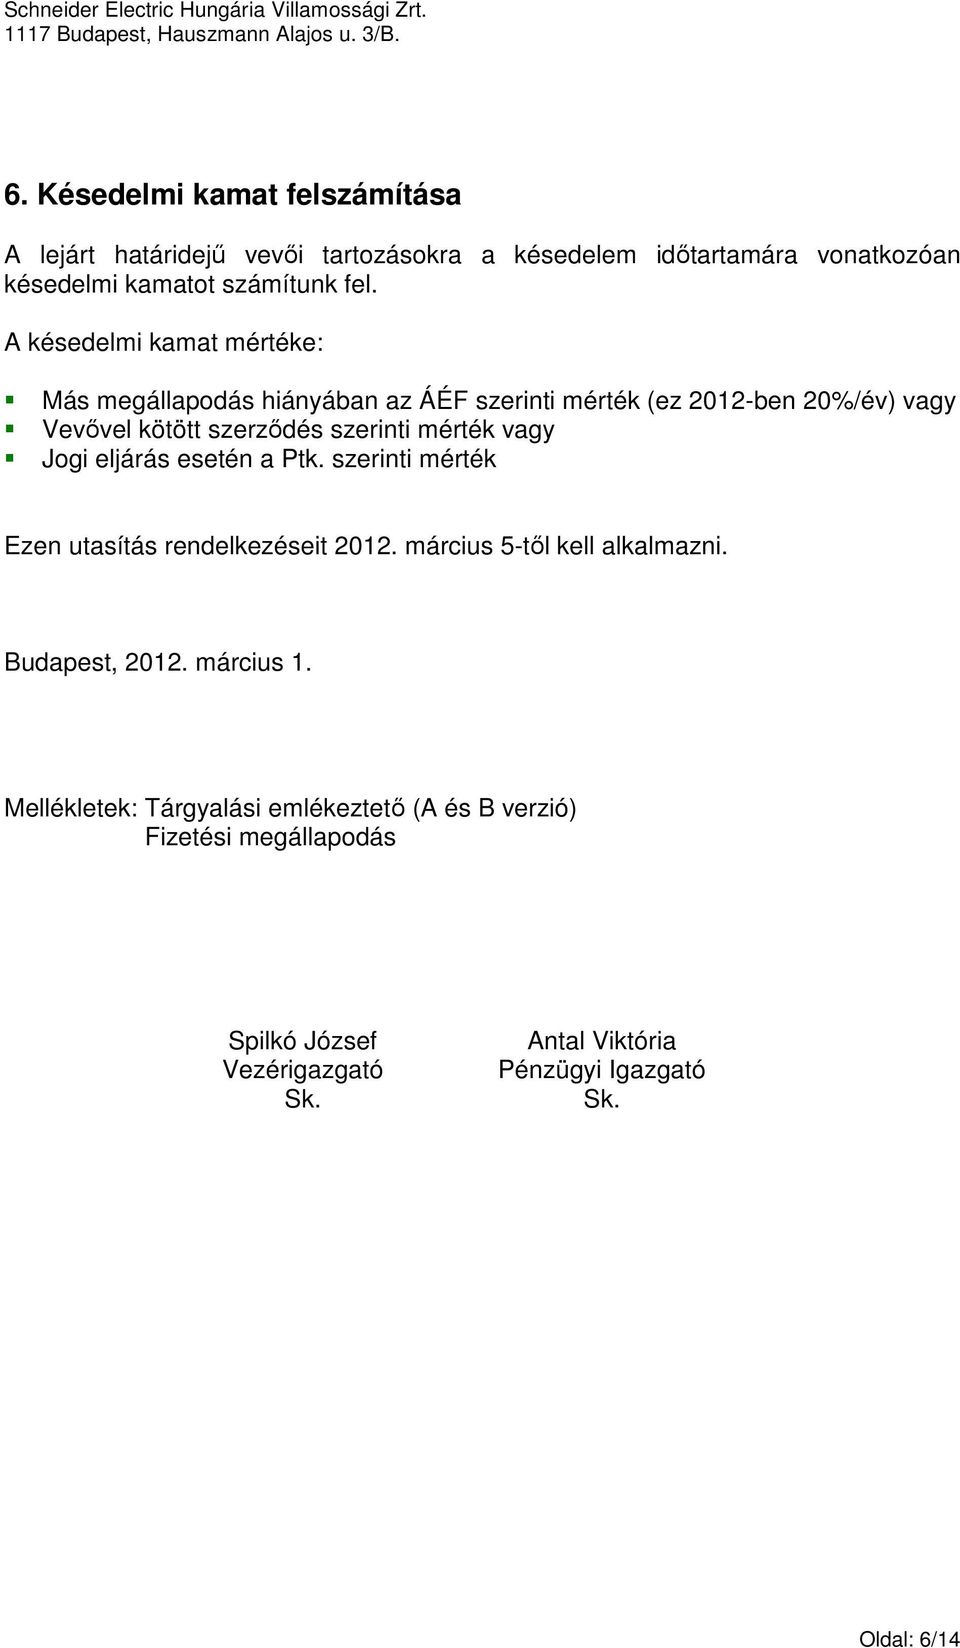 vagy Jogi eljárás esetén a Ptk. szerinti mérték Ezen utasítás rendelkezéseit 2012. március 5-tıl kell alkalmazni. Budapest, 2012. március 1.